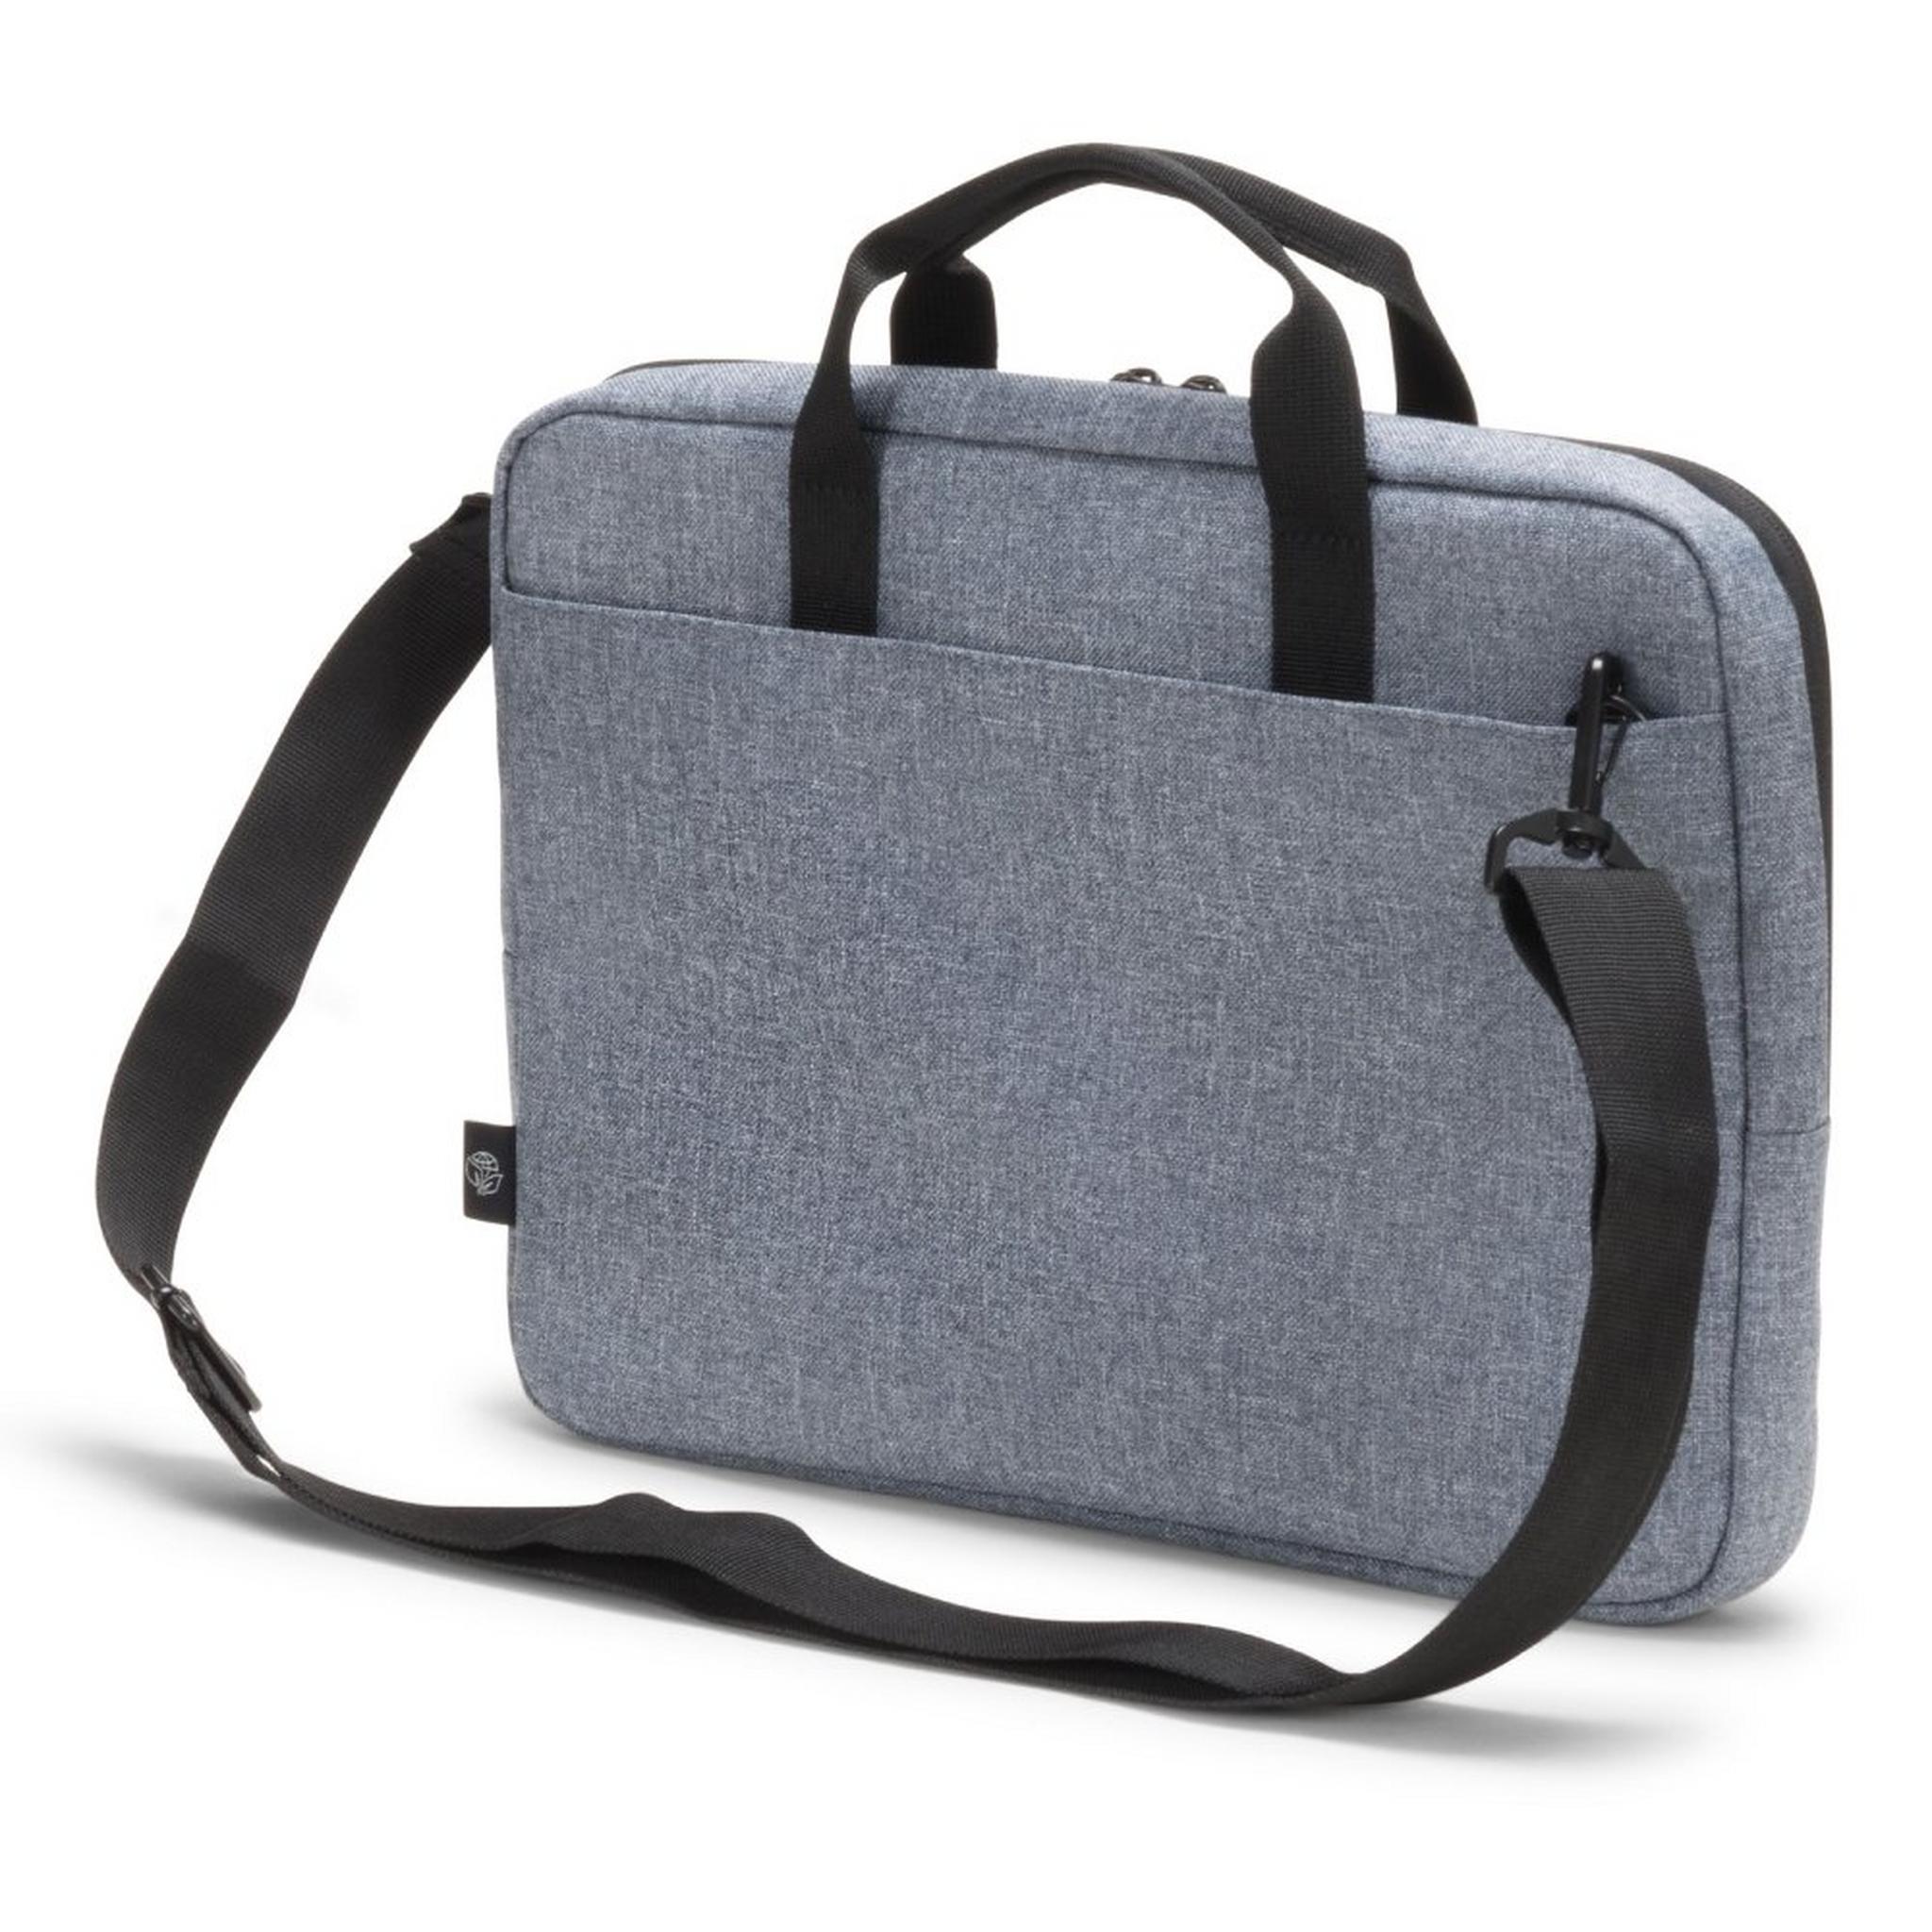 حقيبة ايكو سليم موشن للابتوب بحجم 13.3 بوصة من ديكوتا - أزرق